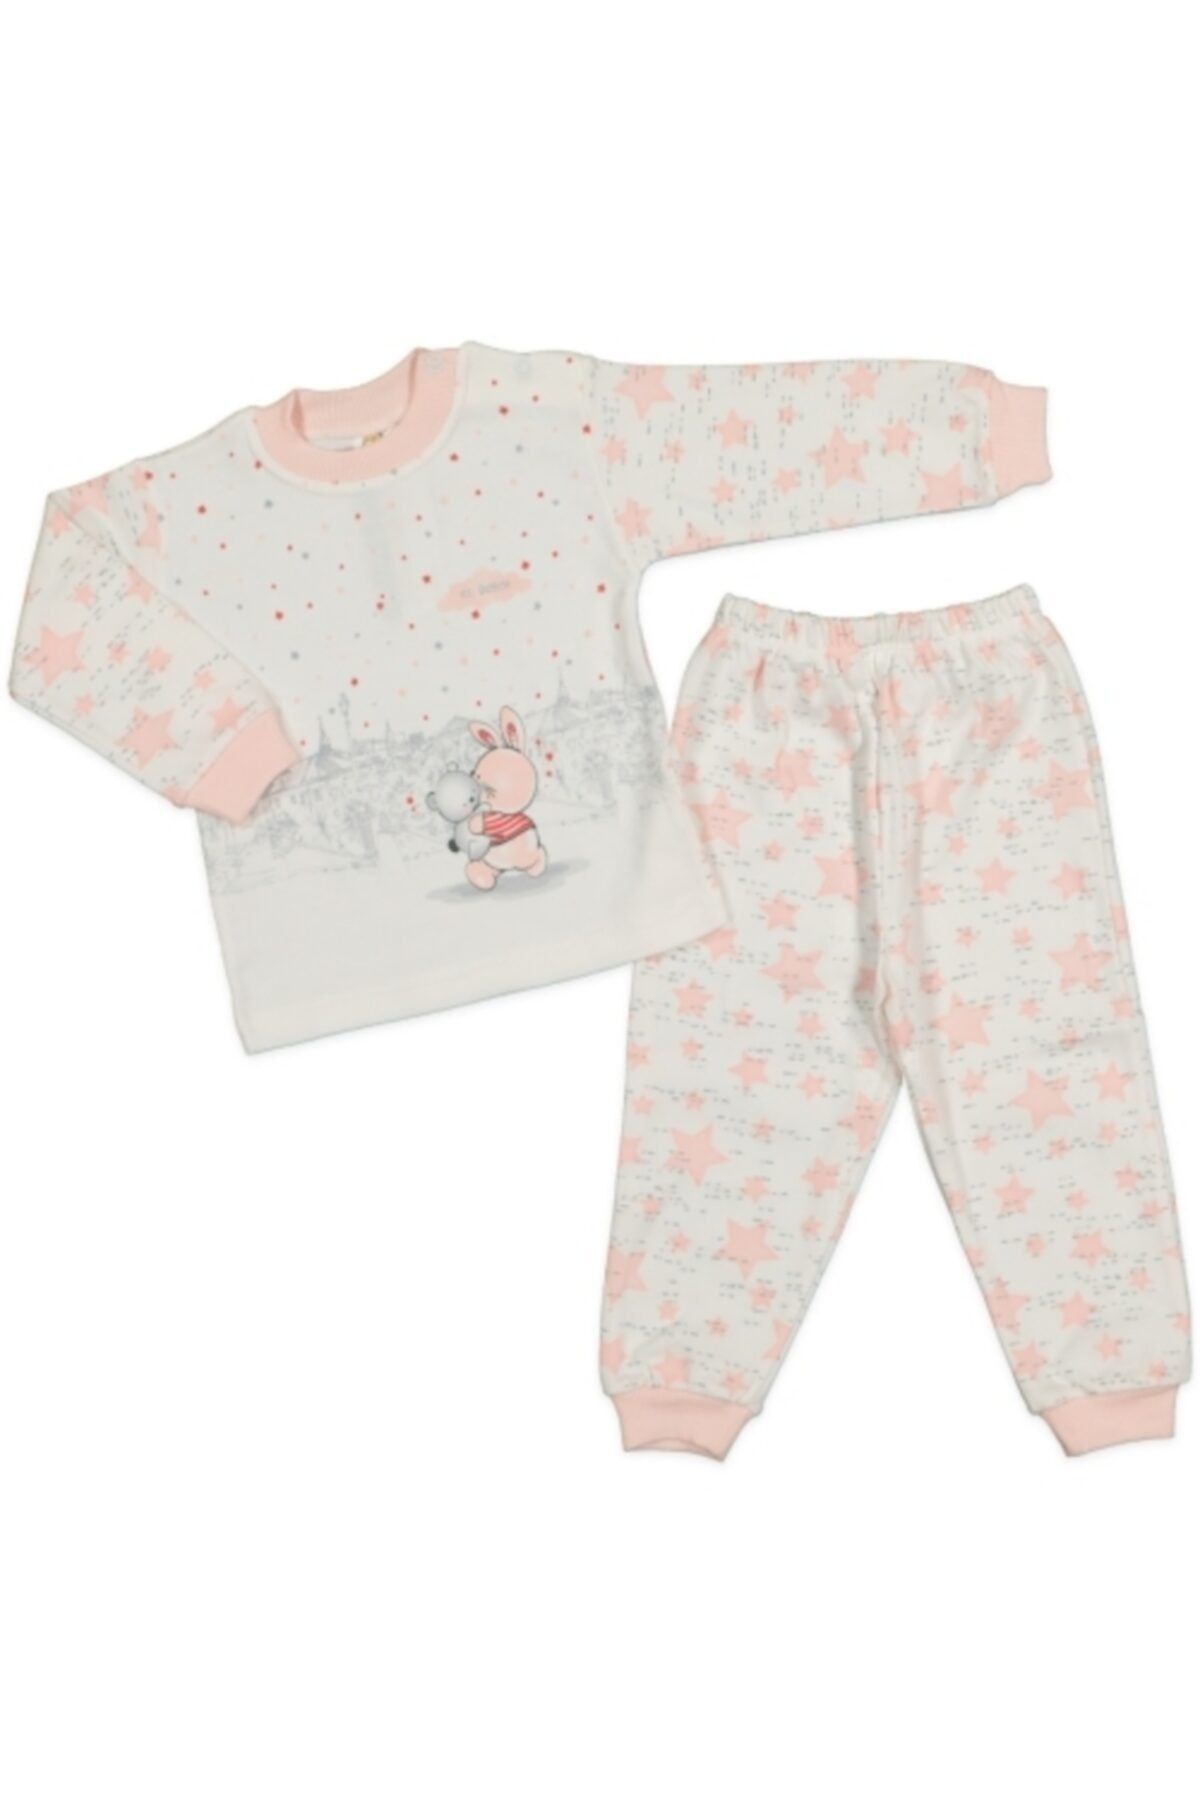 El Bebek Kız Çocuk Tavşan Baskılı Pijama Takımı